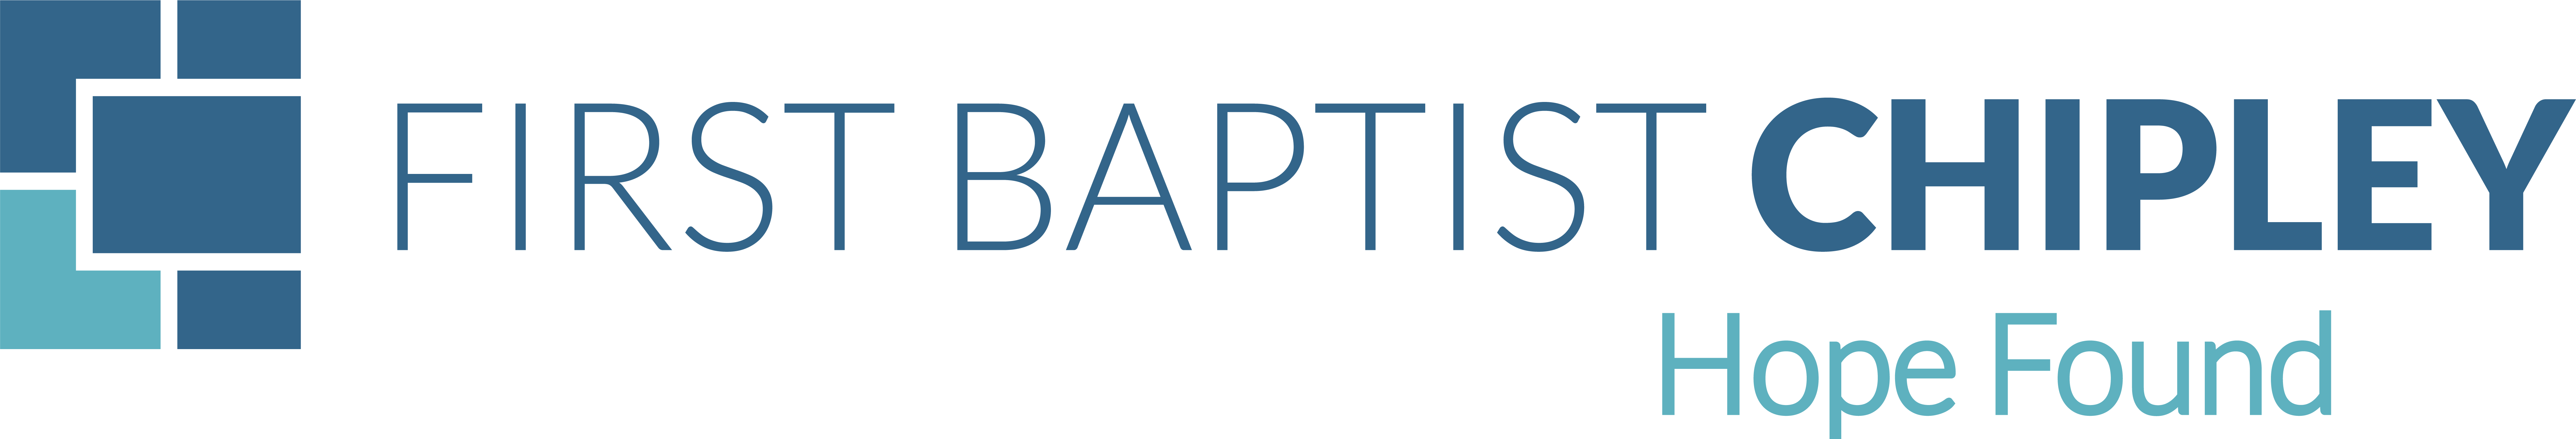 baptist dating site usage dataset